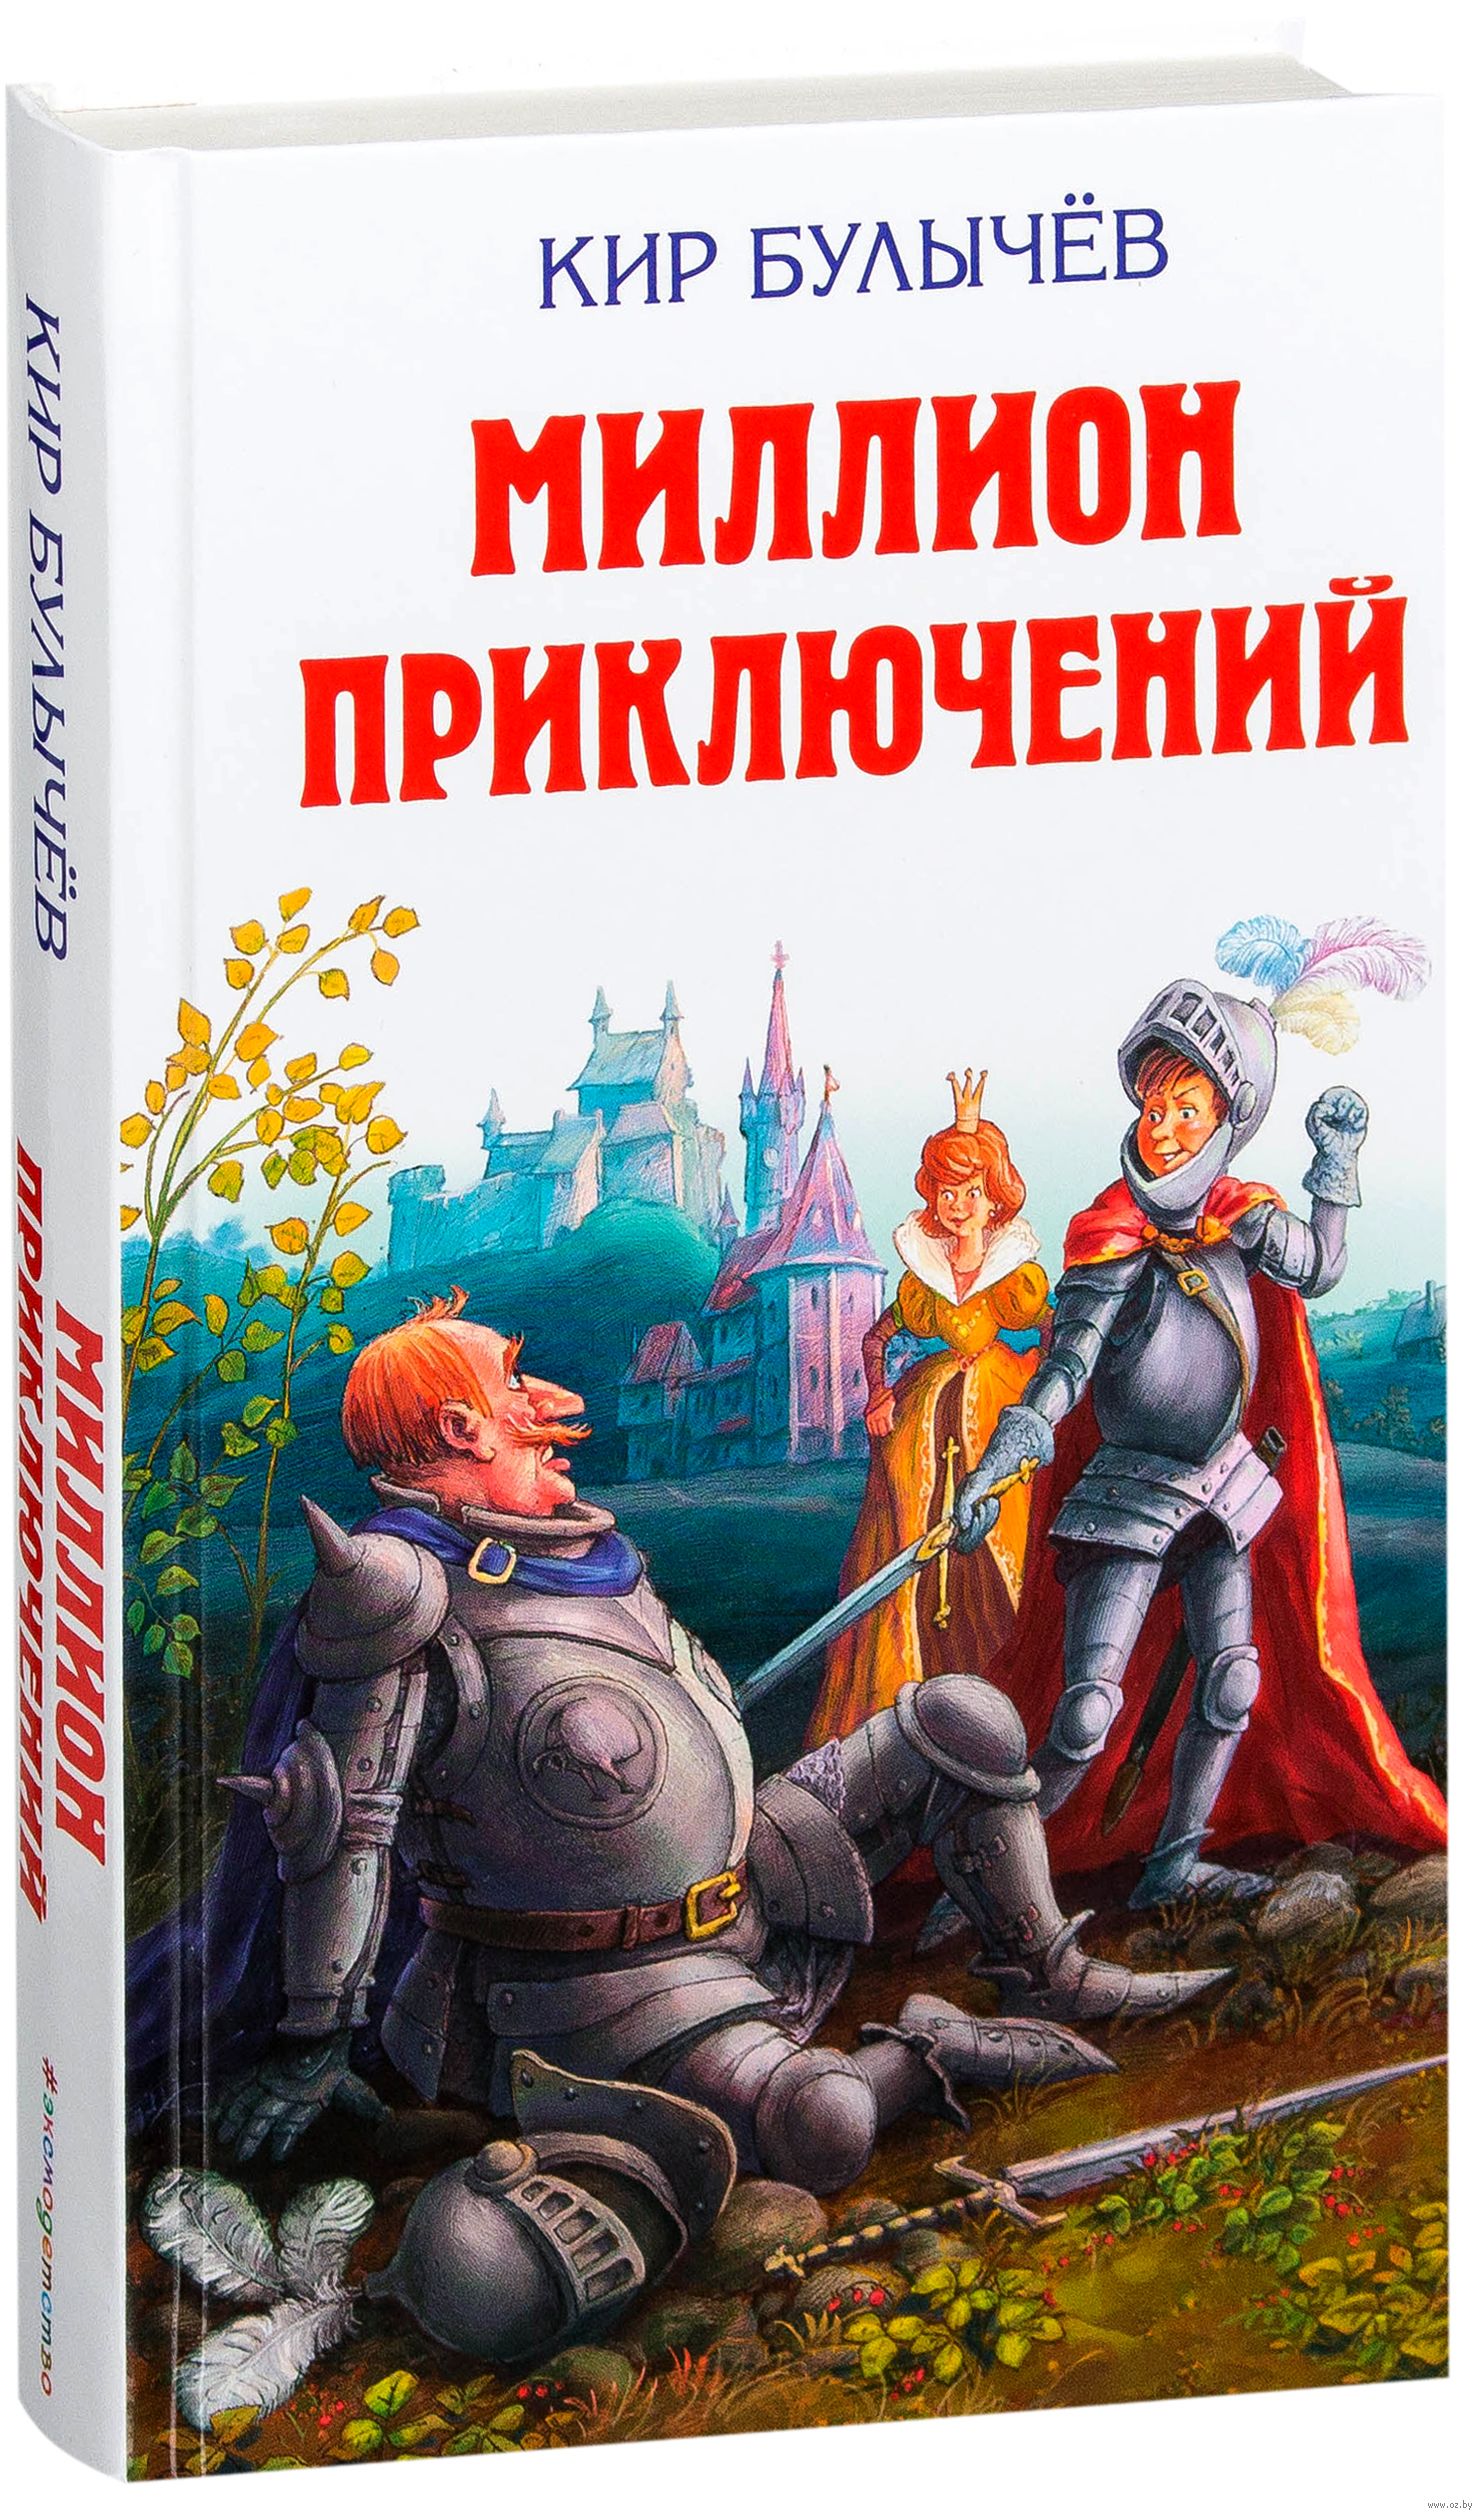 Книги Кира Булычева